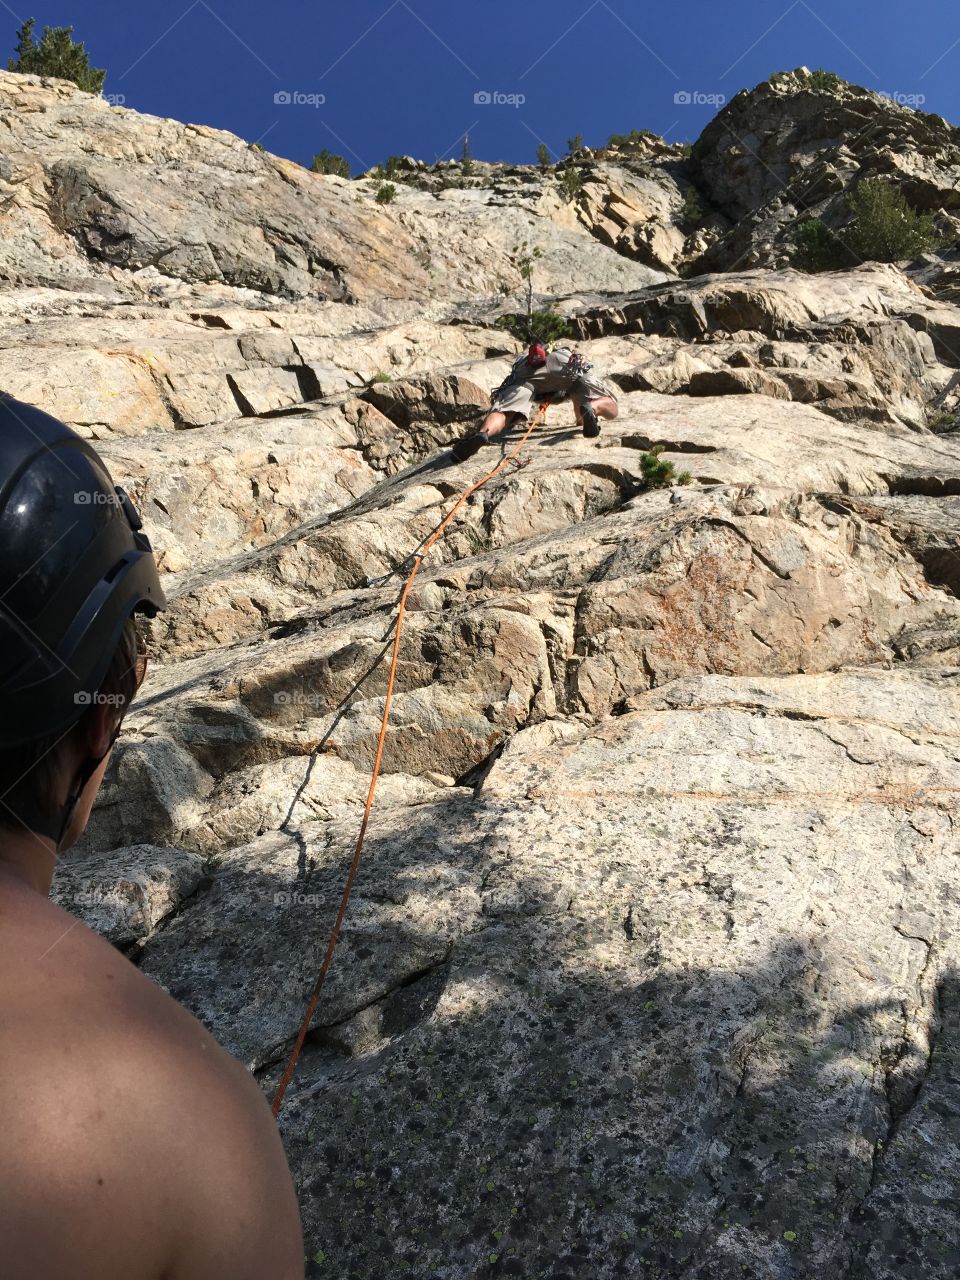 Rock climber climbing up a rock